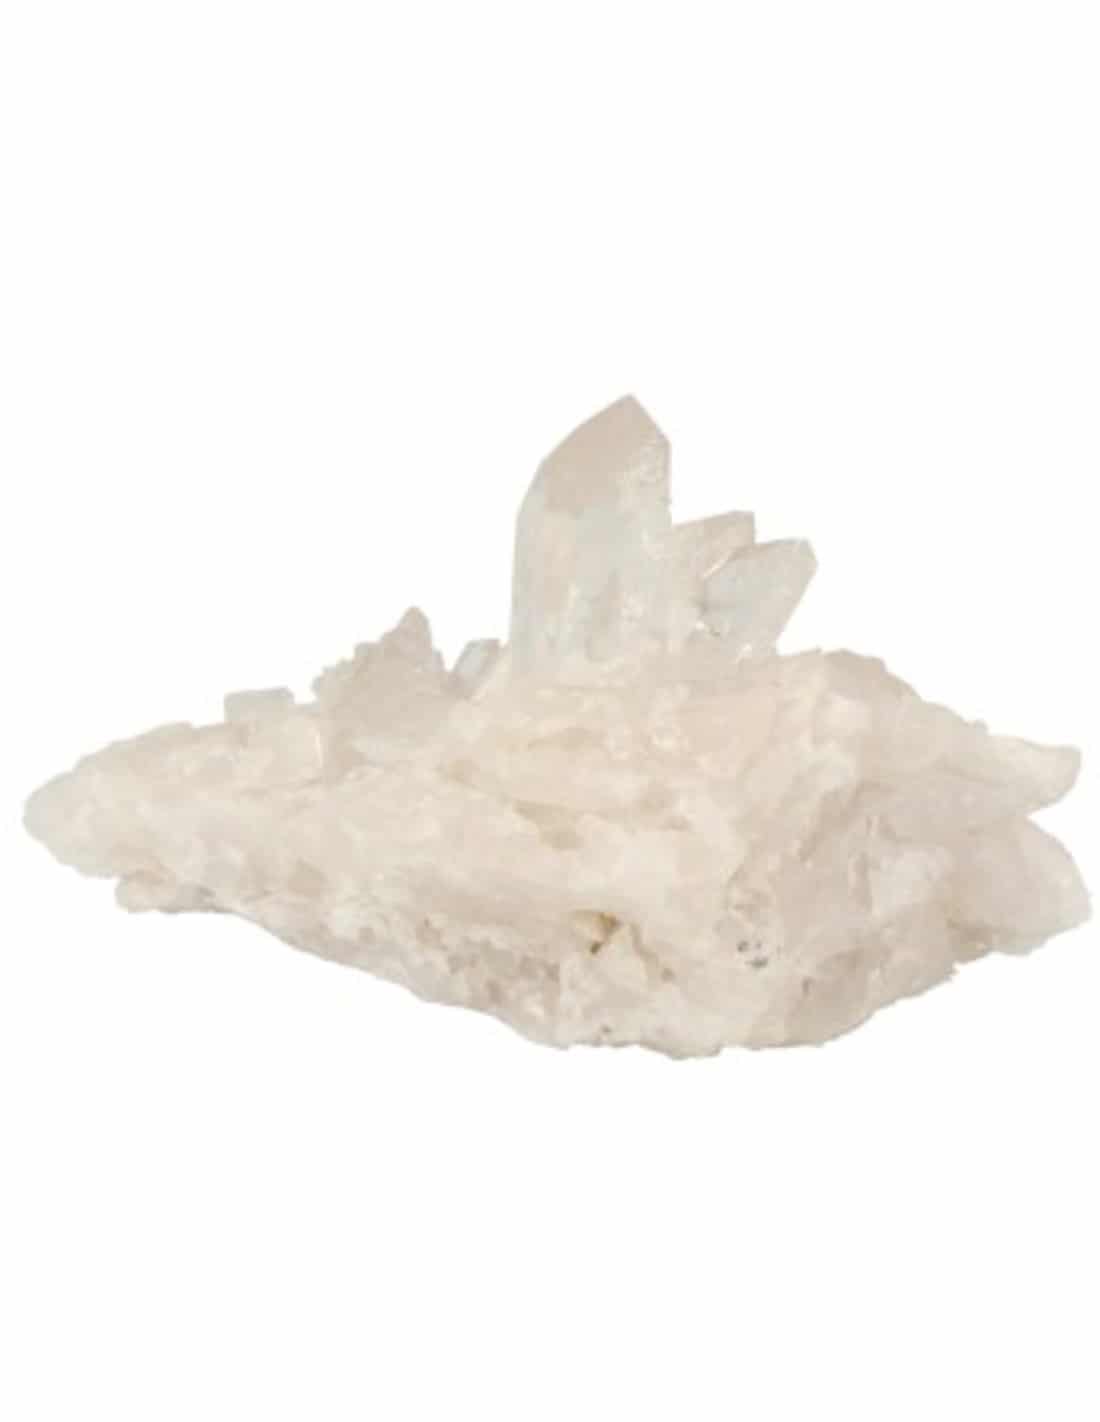 Ruwe Edelsteen Bergkristal Arkansas (Model 7)